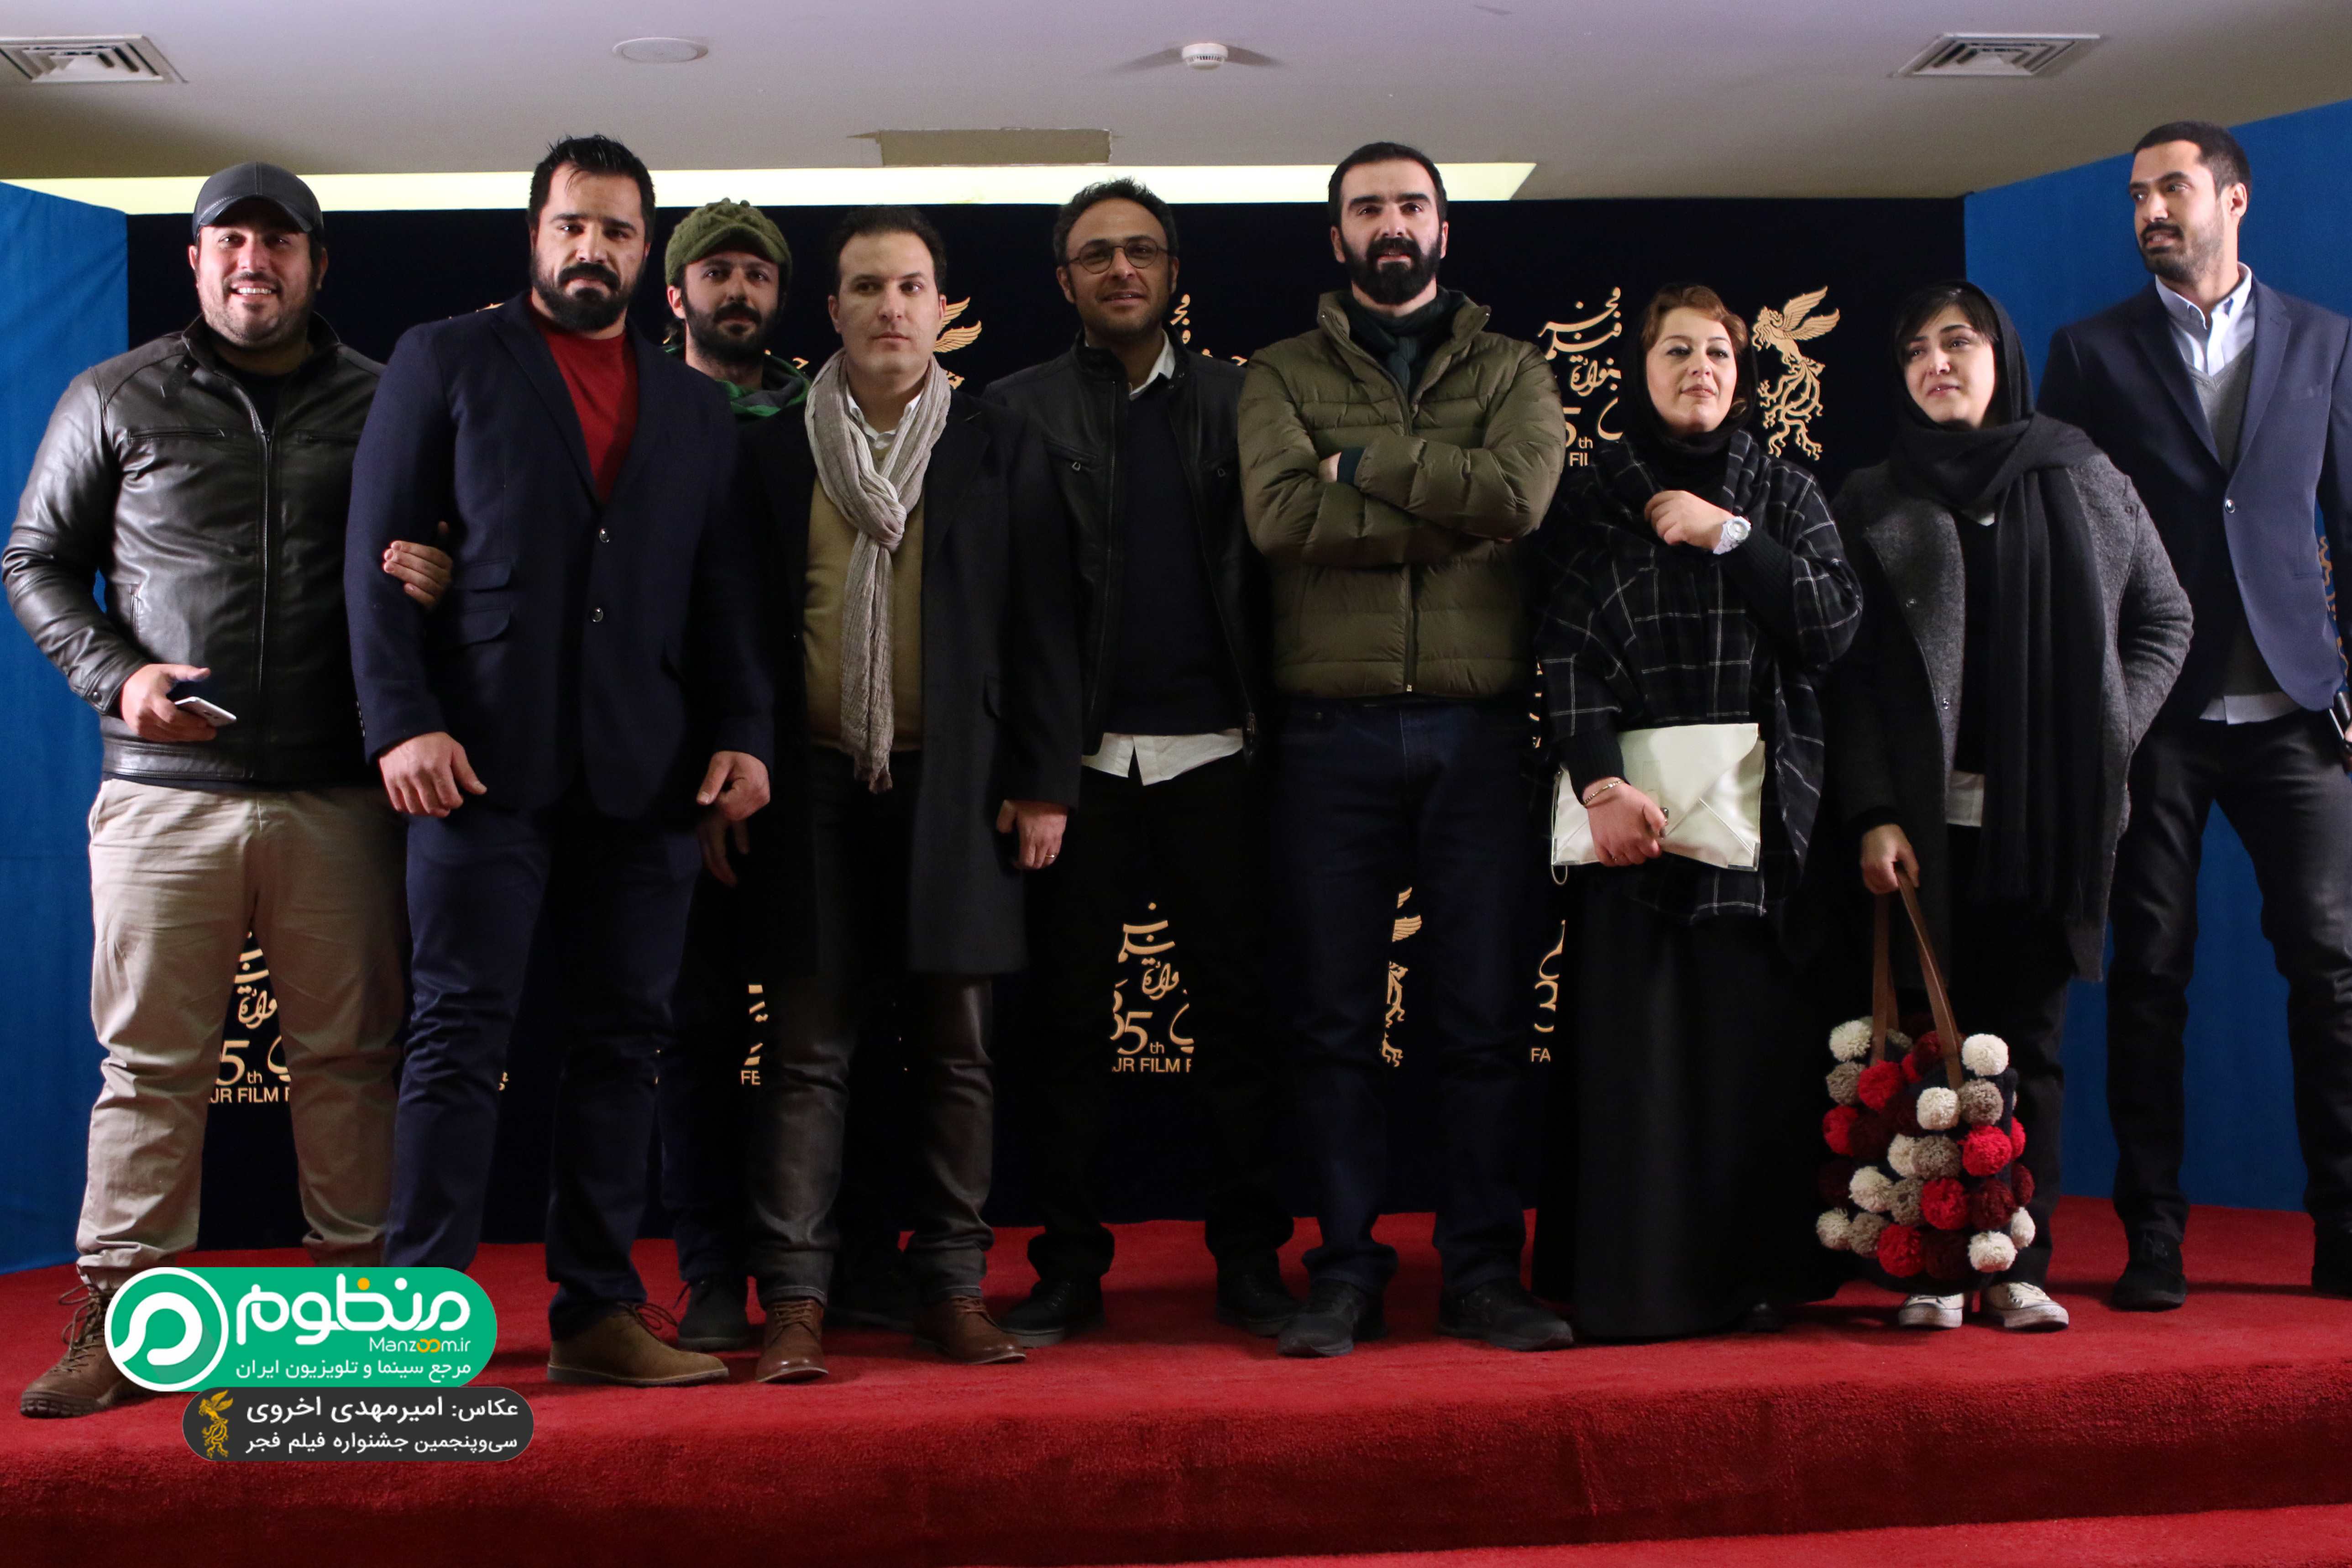 محسن کیایی در فرش قرمز فیلم سینمایی سد معبر به همراه باران کوثری، محسن قرایی، علیرضا کمالی و سپیده عبدالوهاب